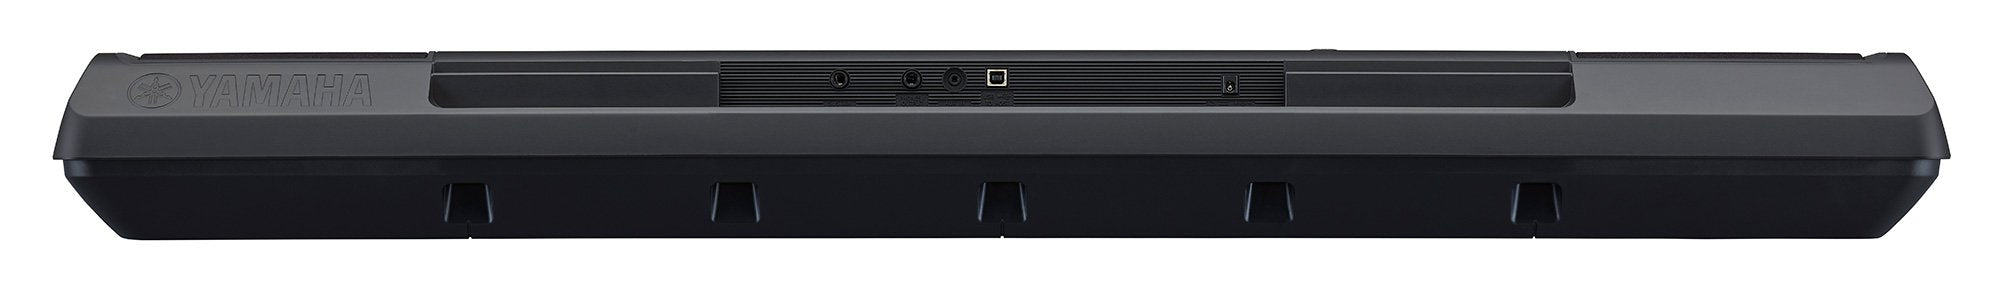 Yamaha PSR-EW310 Portable Keyboard